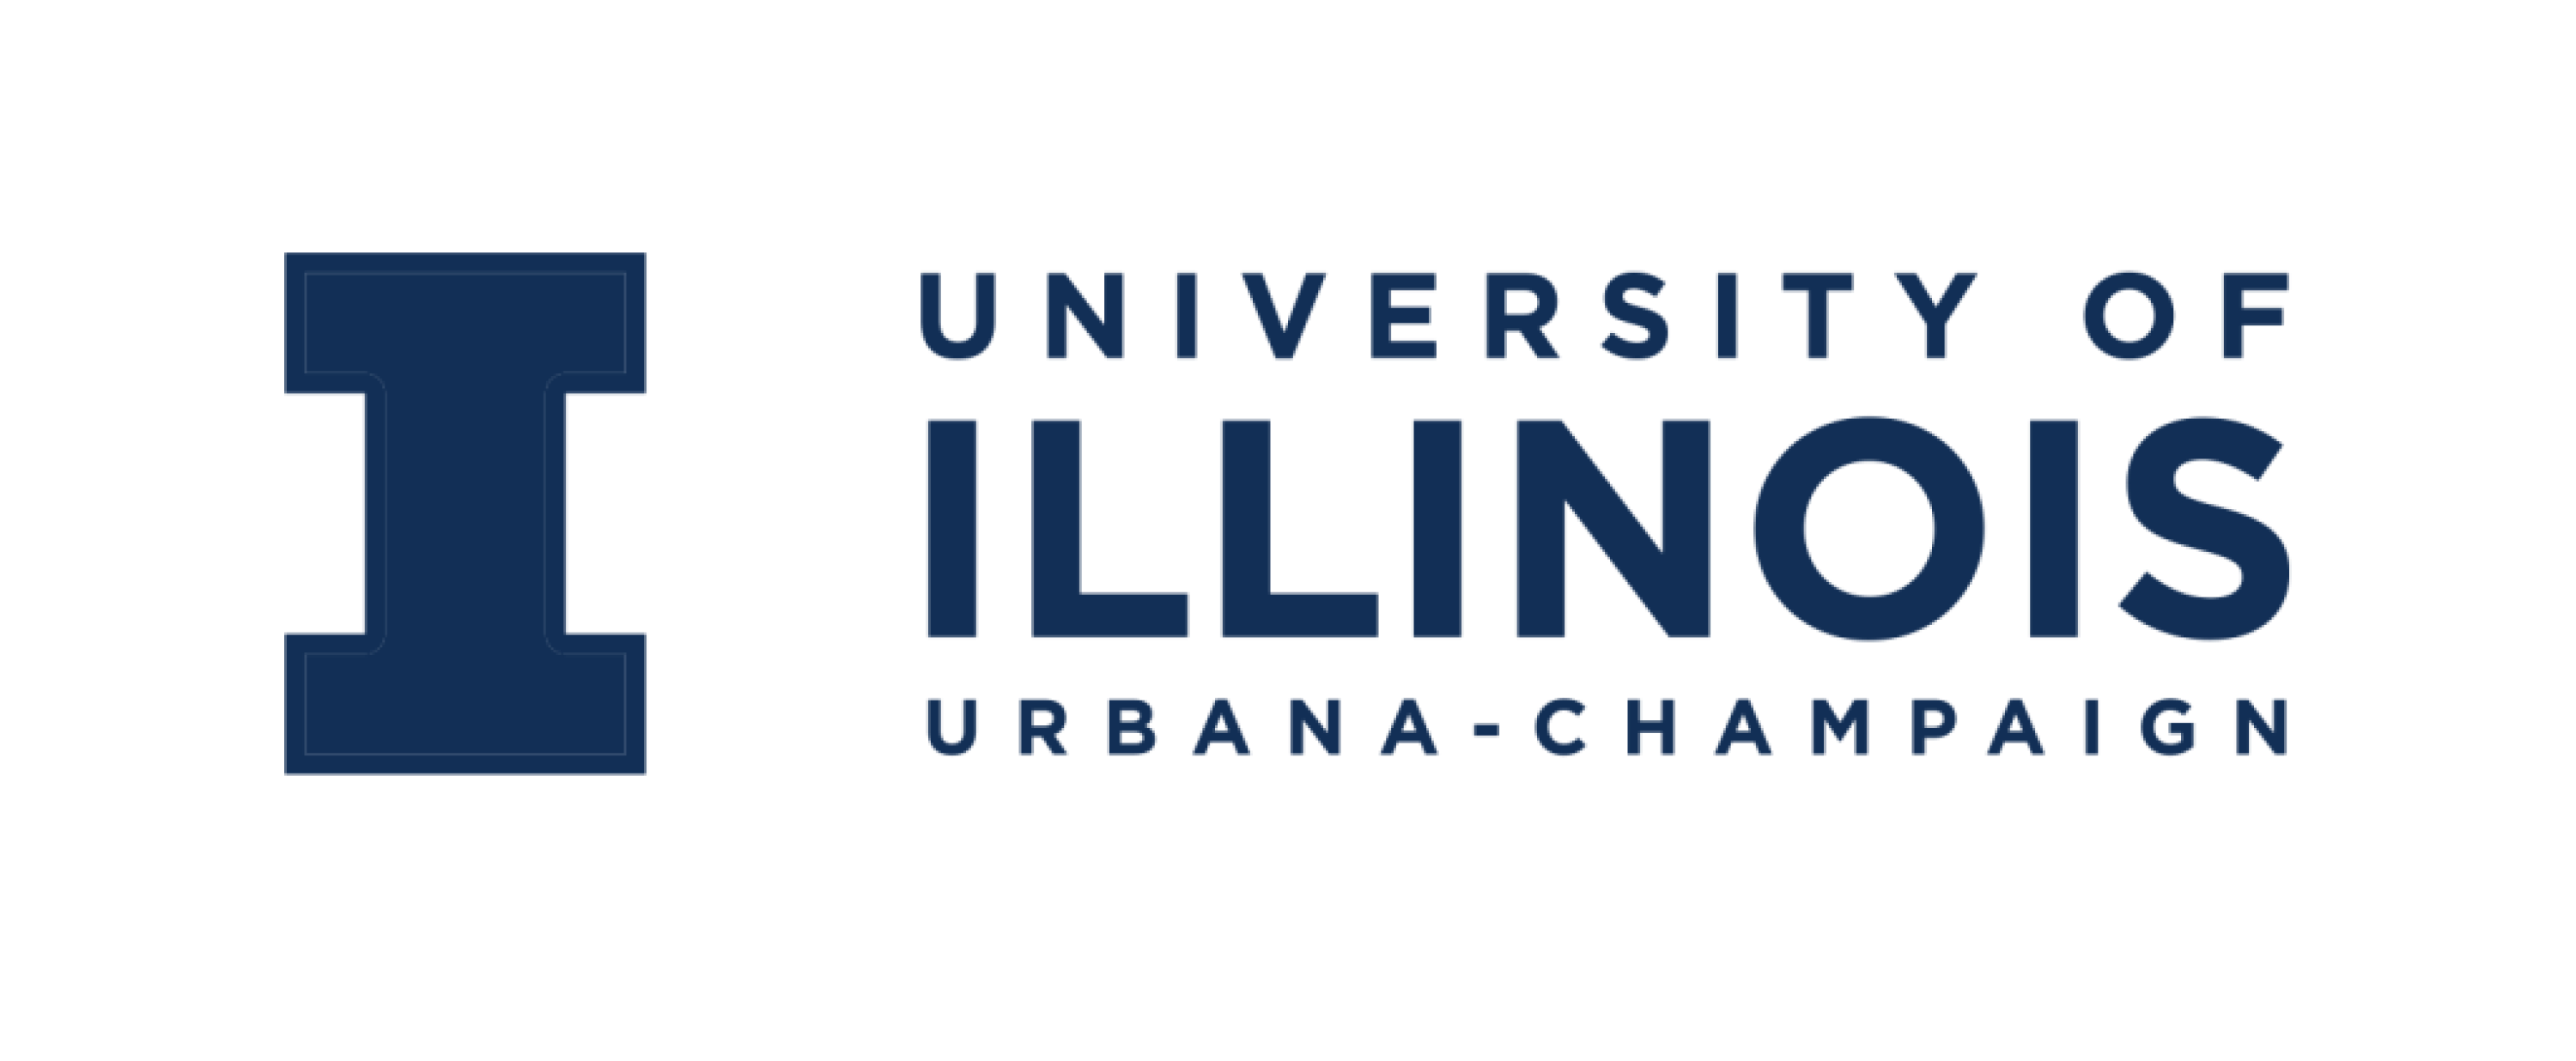 University of Illinois bw